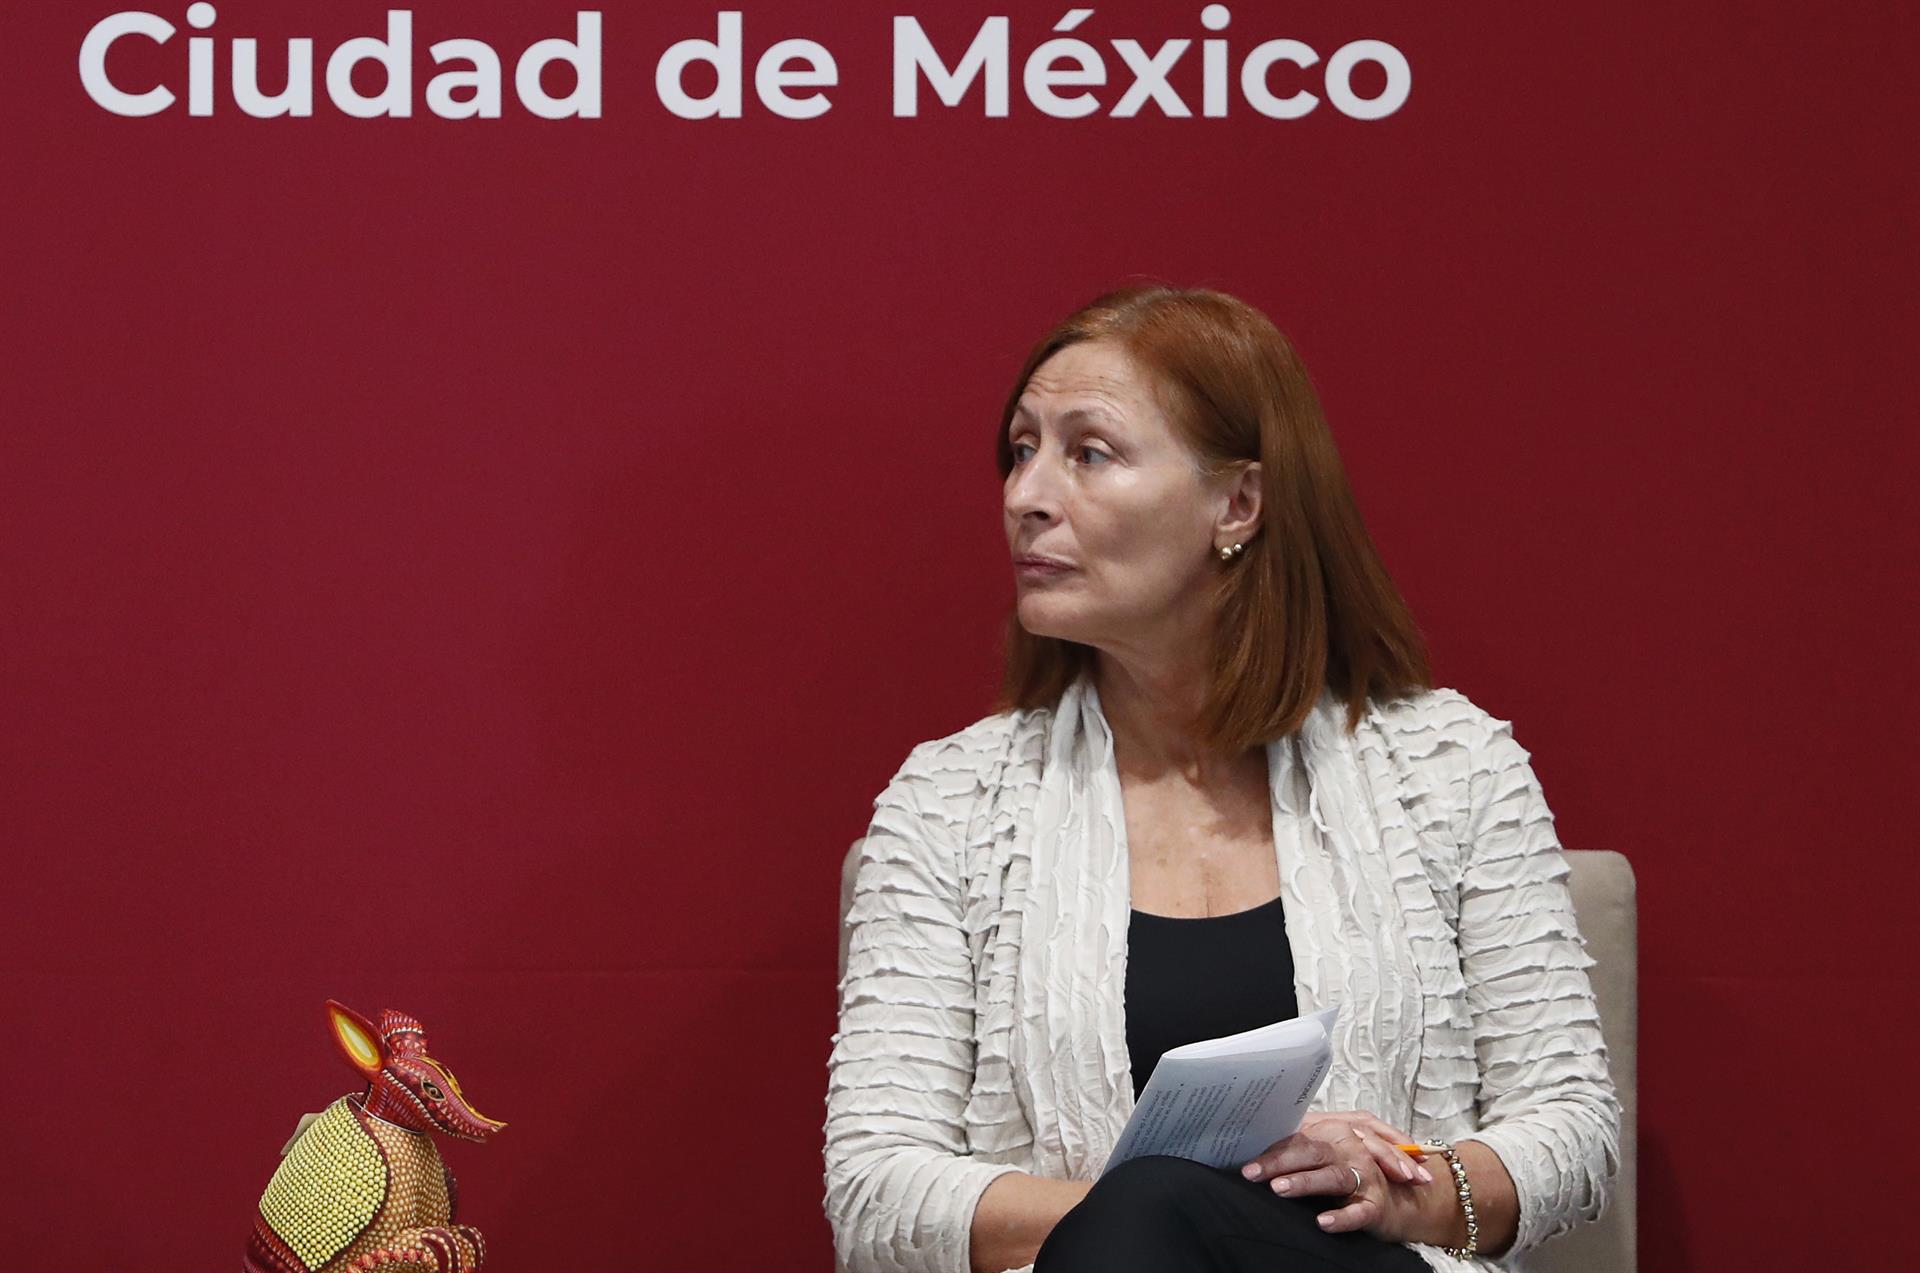 La secretaria de Economía, Tatiana Clouthier, imagen de archivo. EFE/ Mario Guzmán
